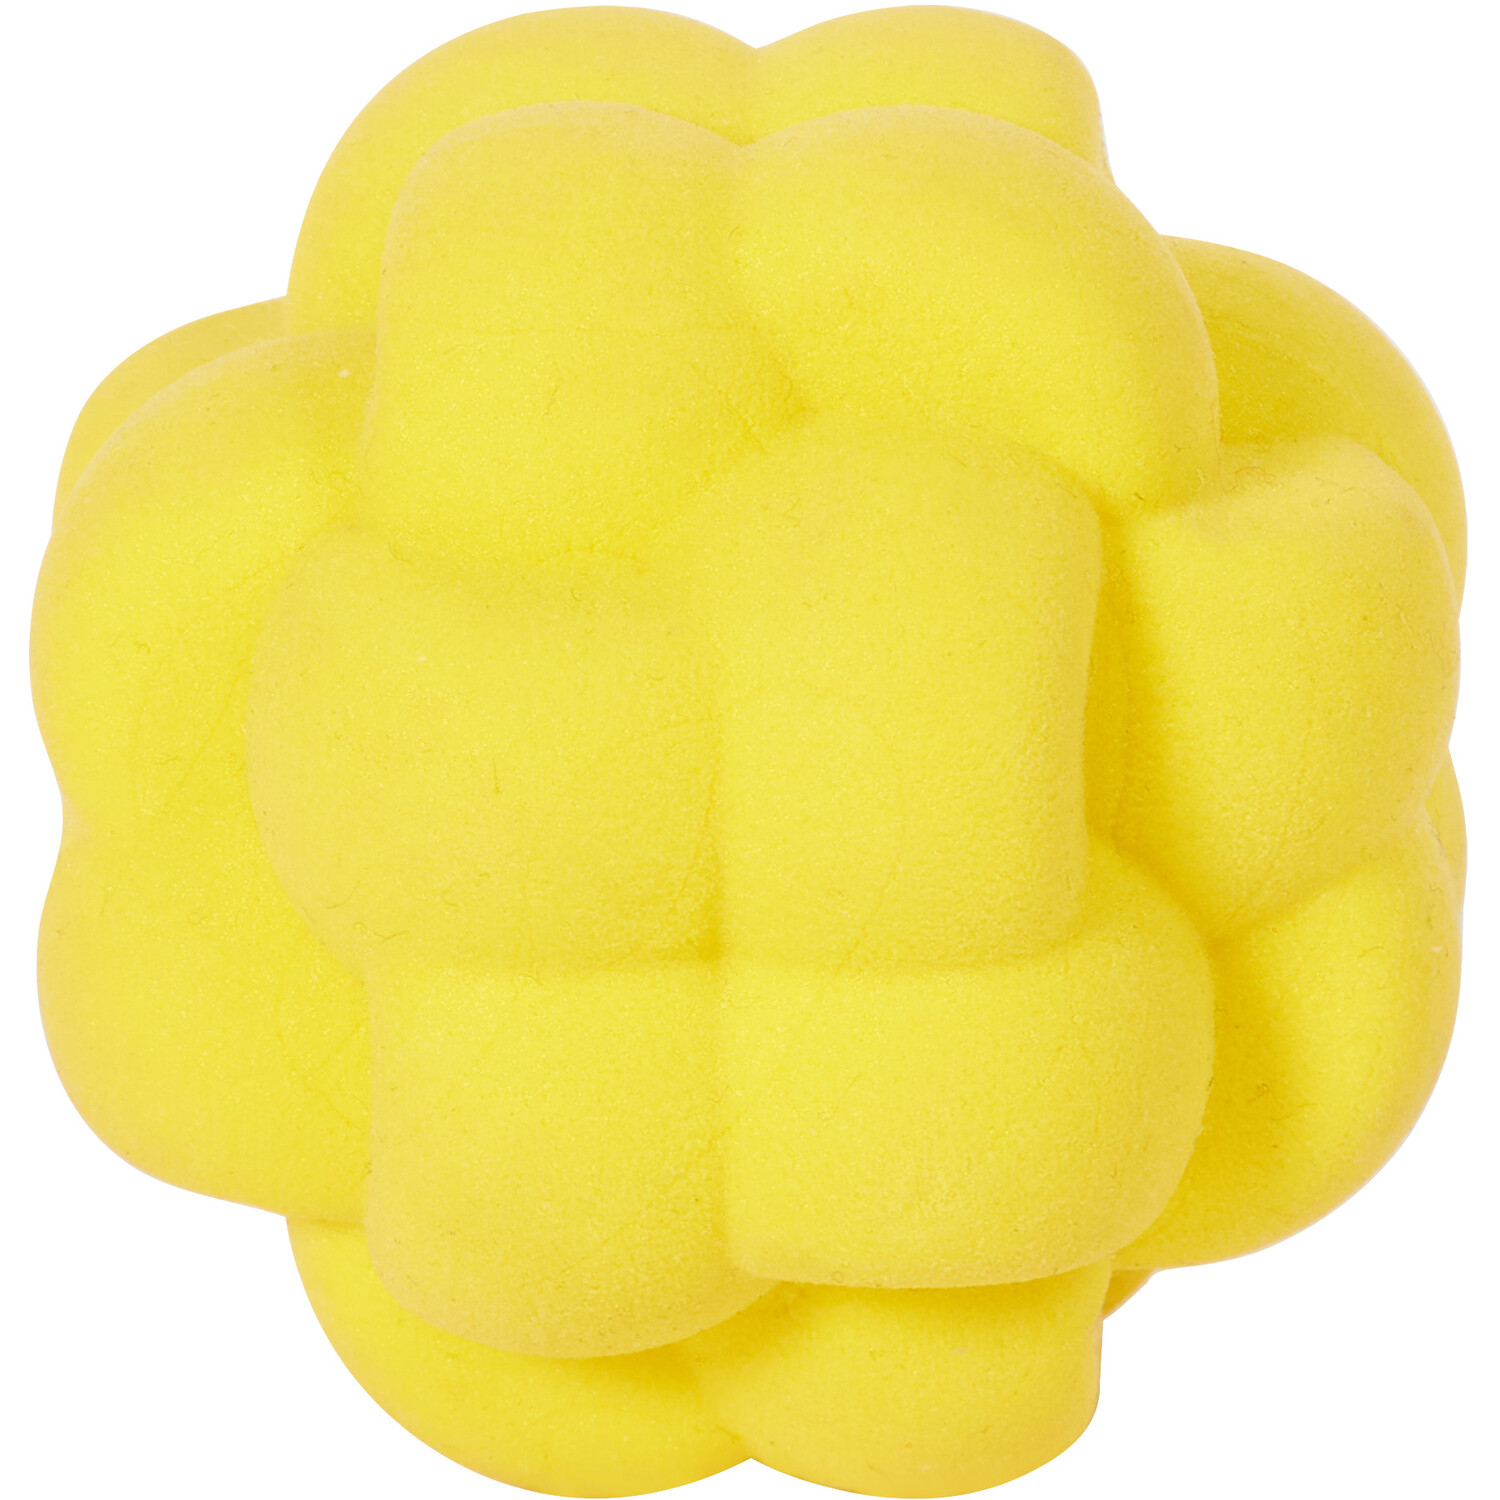 Floating Sponge Weave Ball Dog Toy Image 3